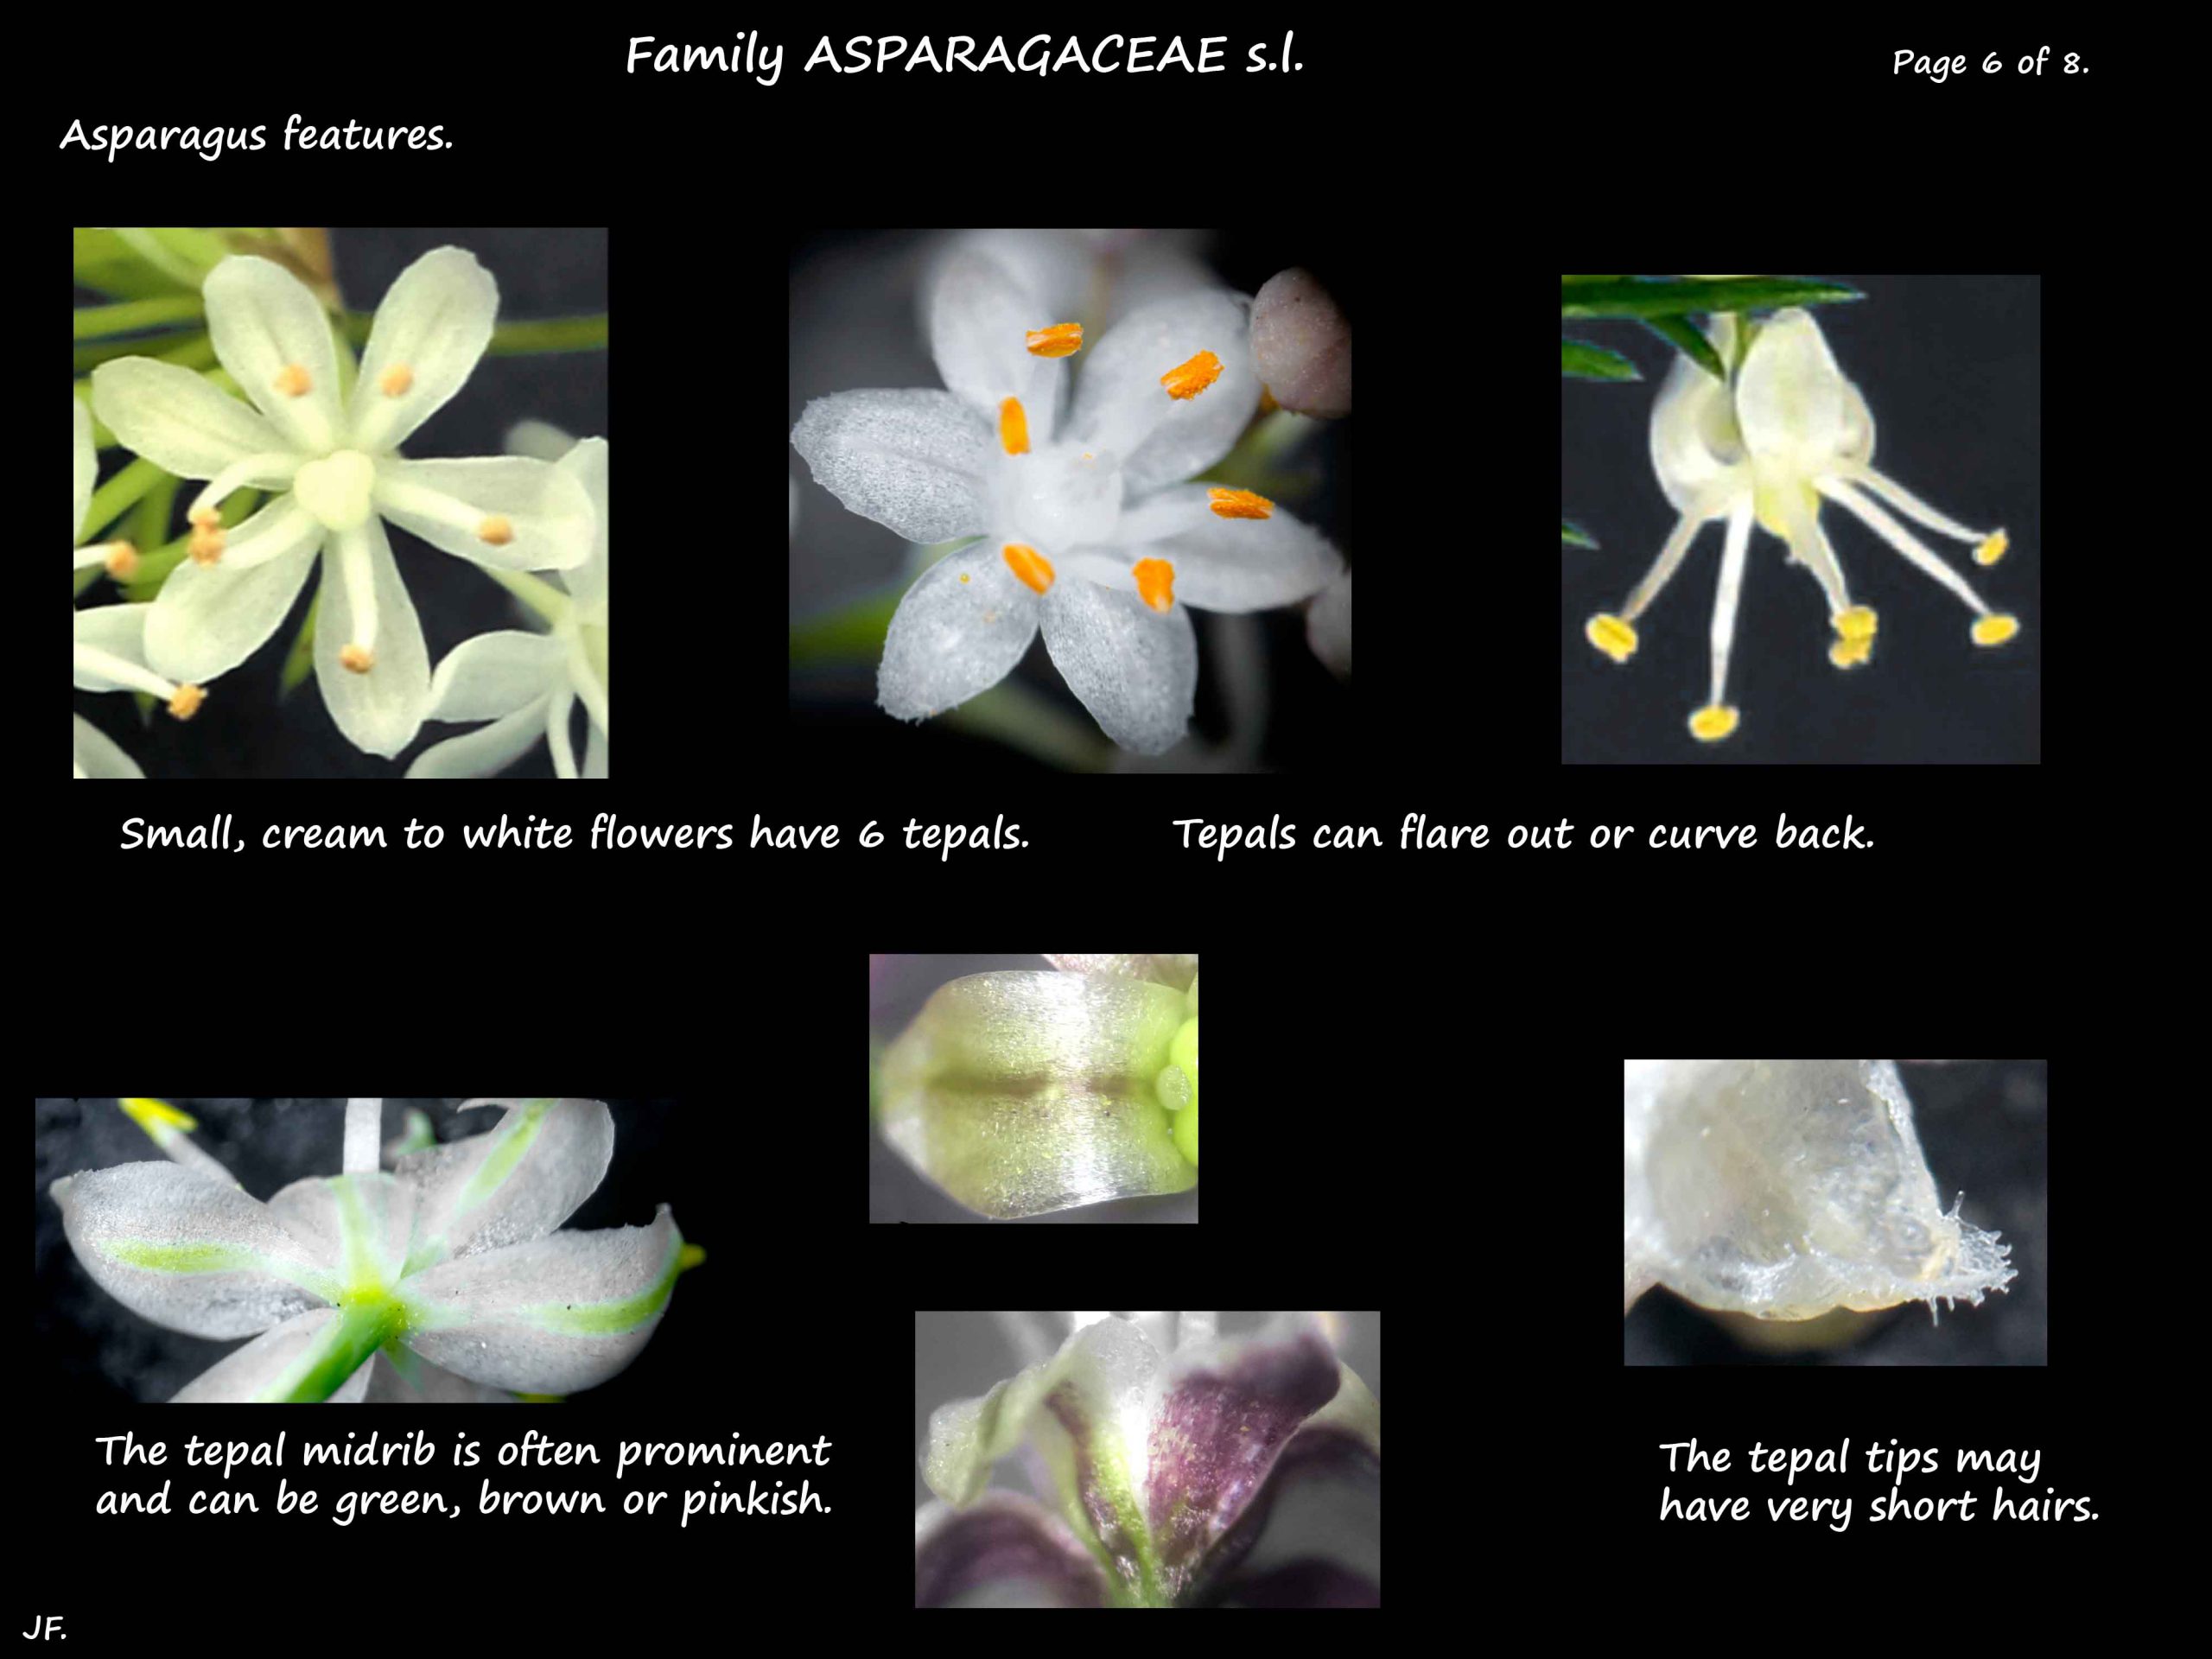 6 Asparagus flowers